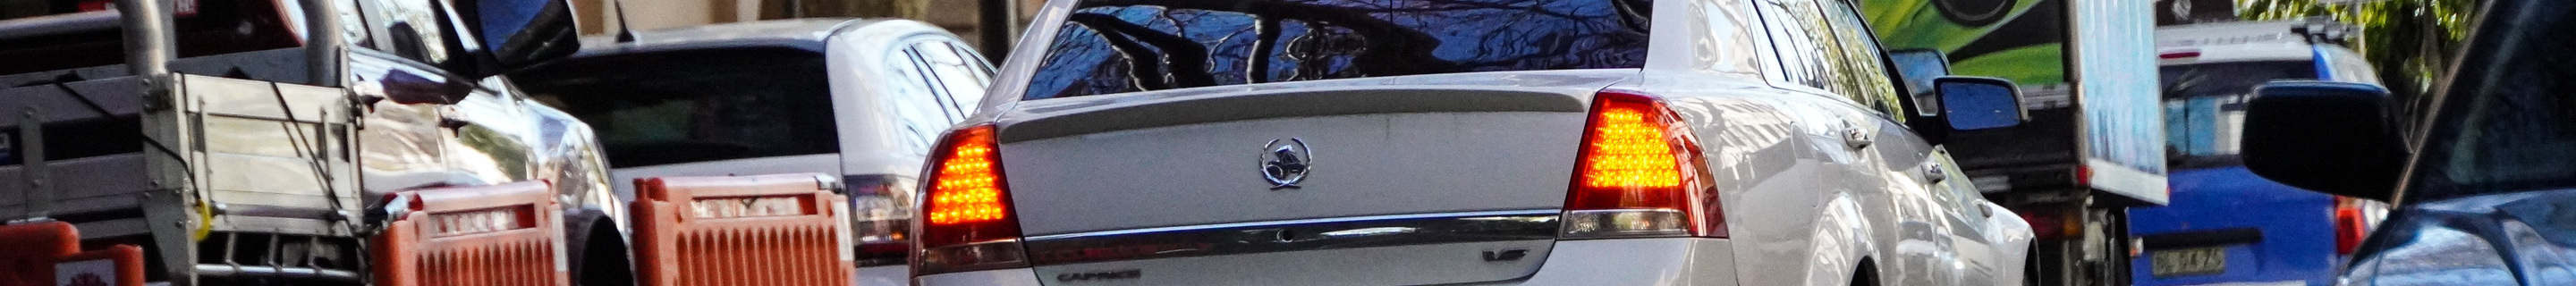 Holden WN Series II Caprice V